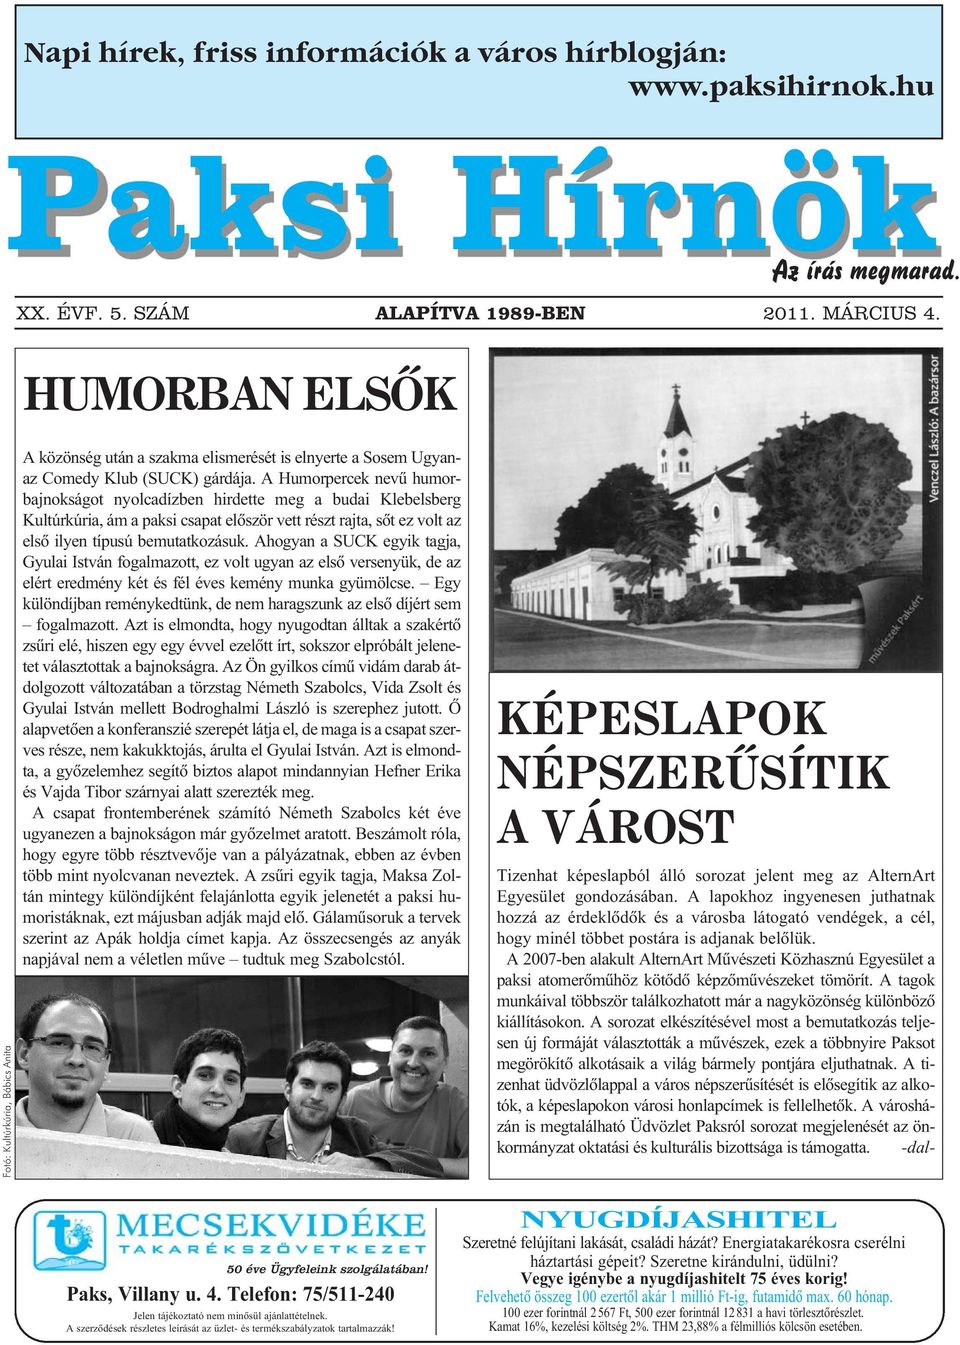 A Humorpercek nevű humorbajnokságot nyolcadízben hirdette meg a budai Klebelsberg Kultúrkúria, ám a paksi csapat először vett részt rajta, sőt ez volt az első ilyen típusú bemutatkozásuk.